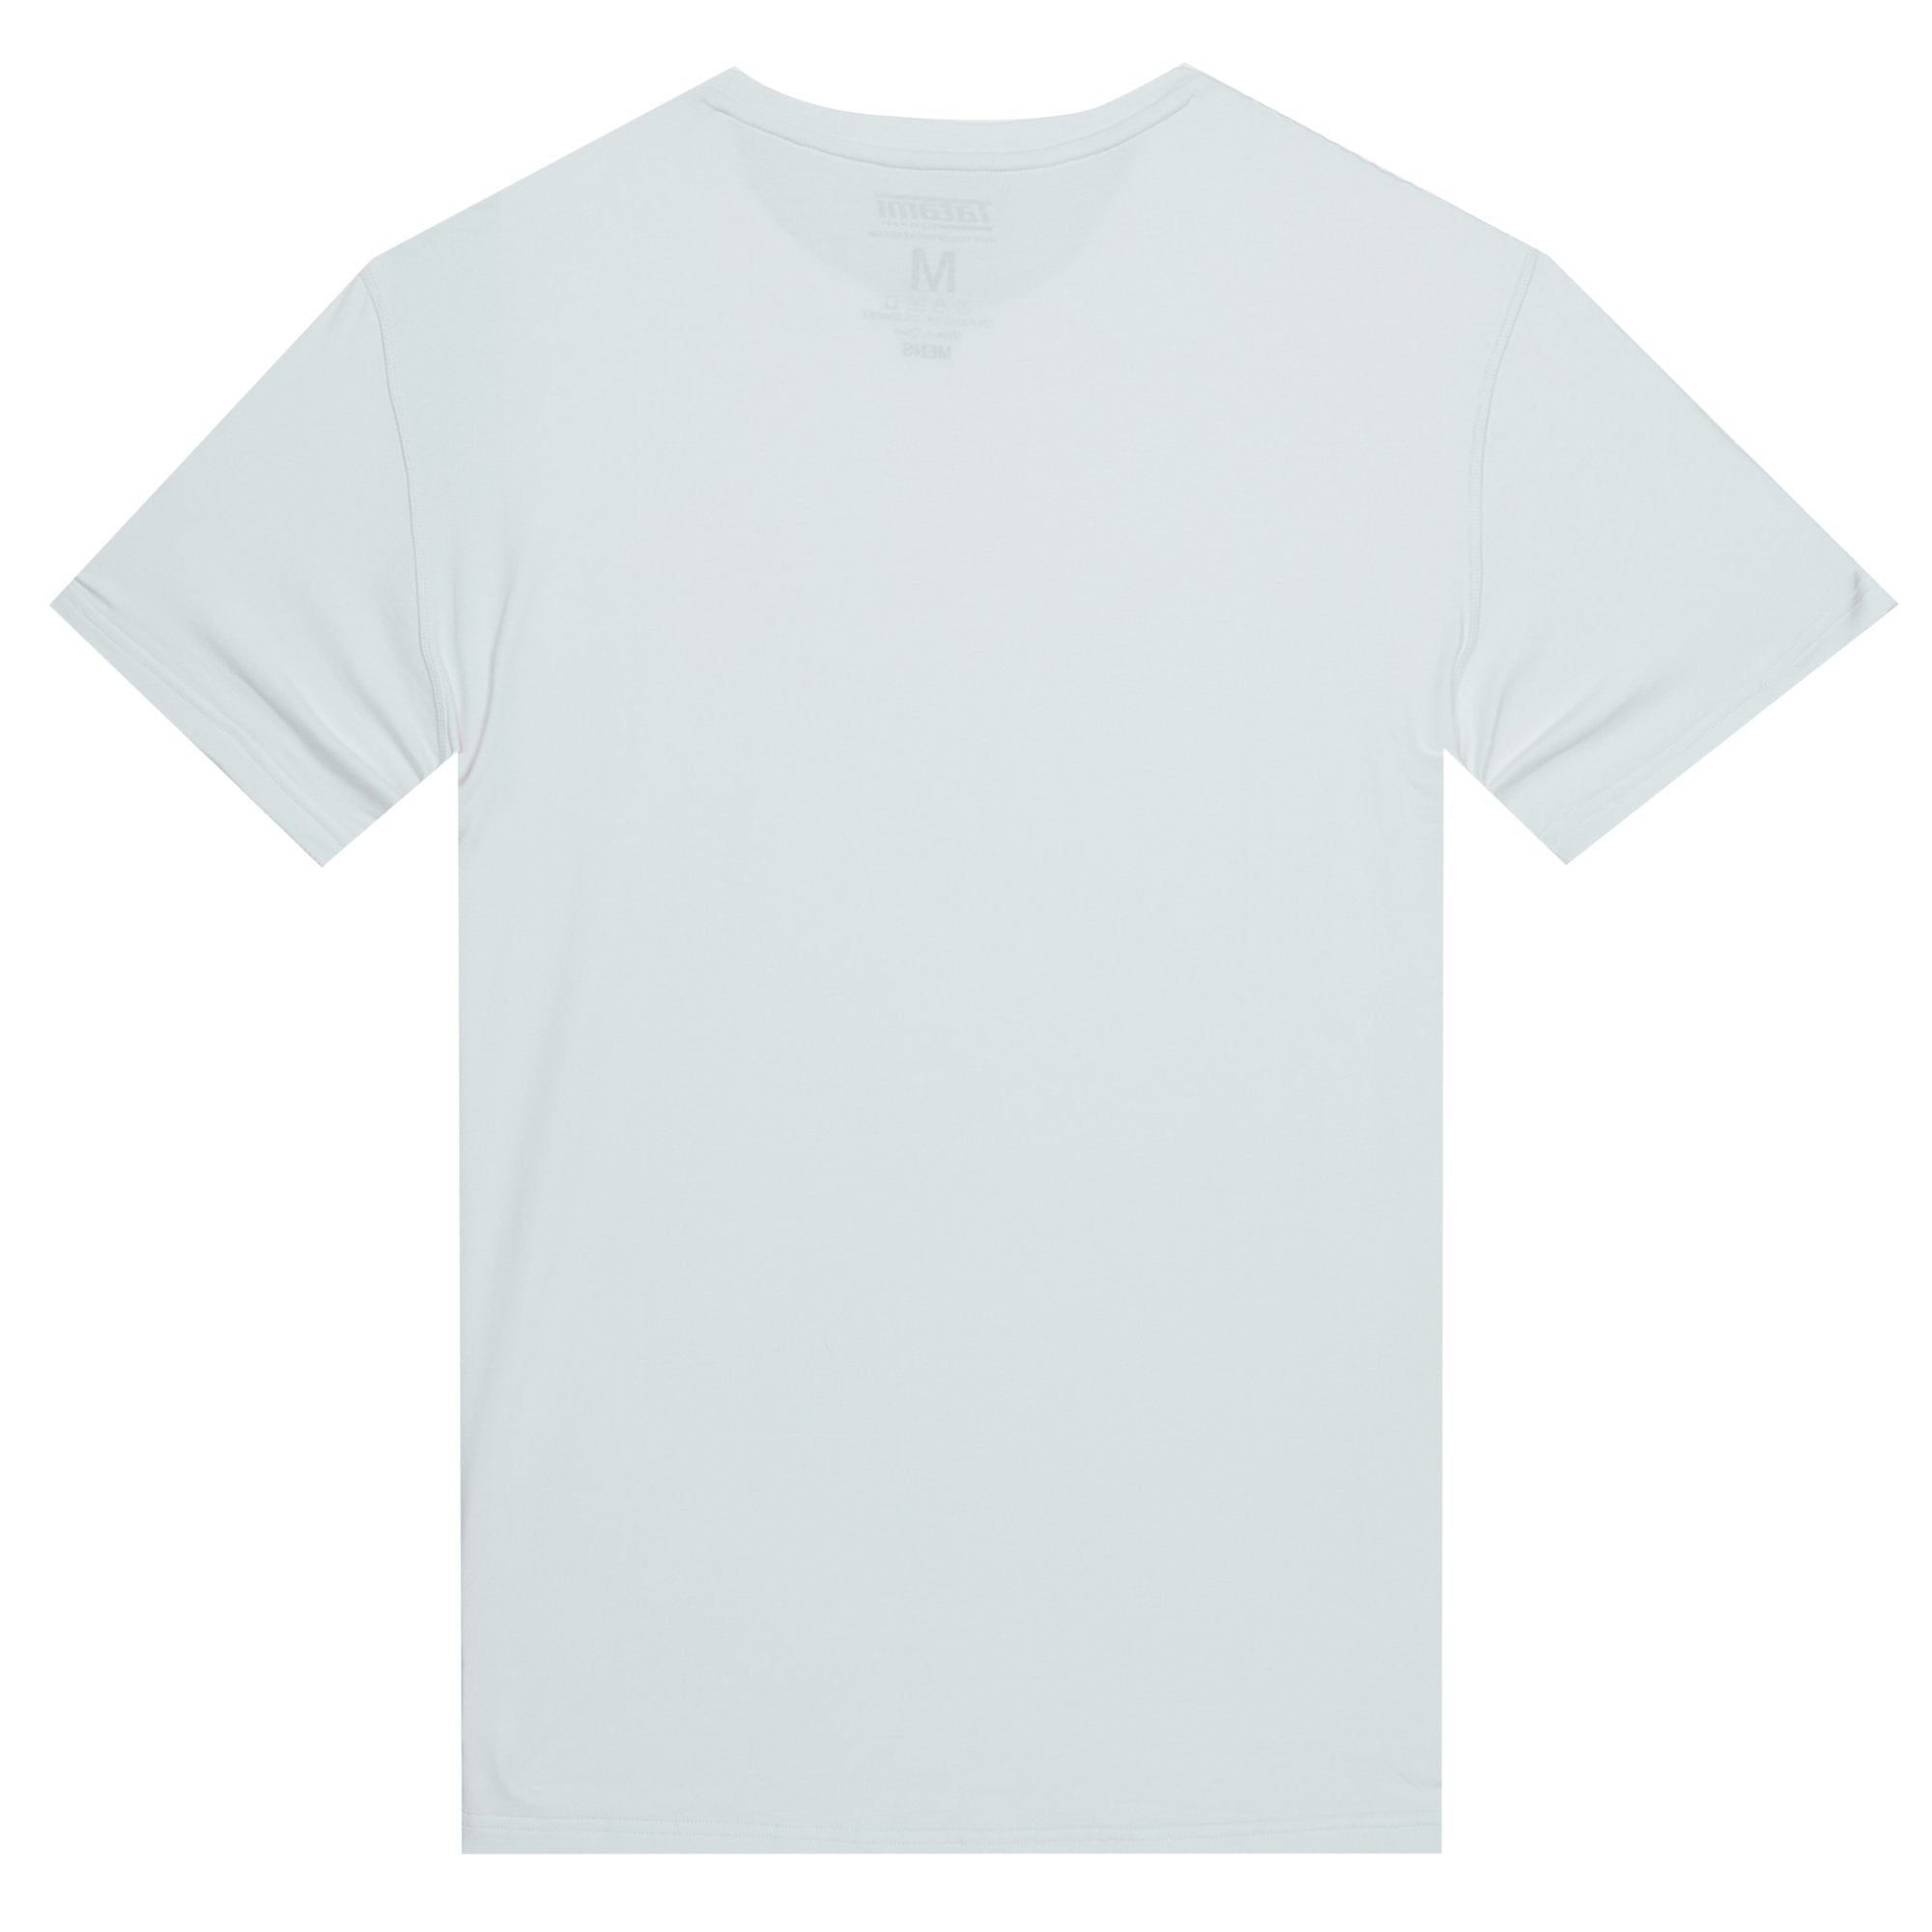 TATAMI Logo T-Shirt White & Black